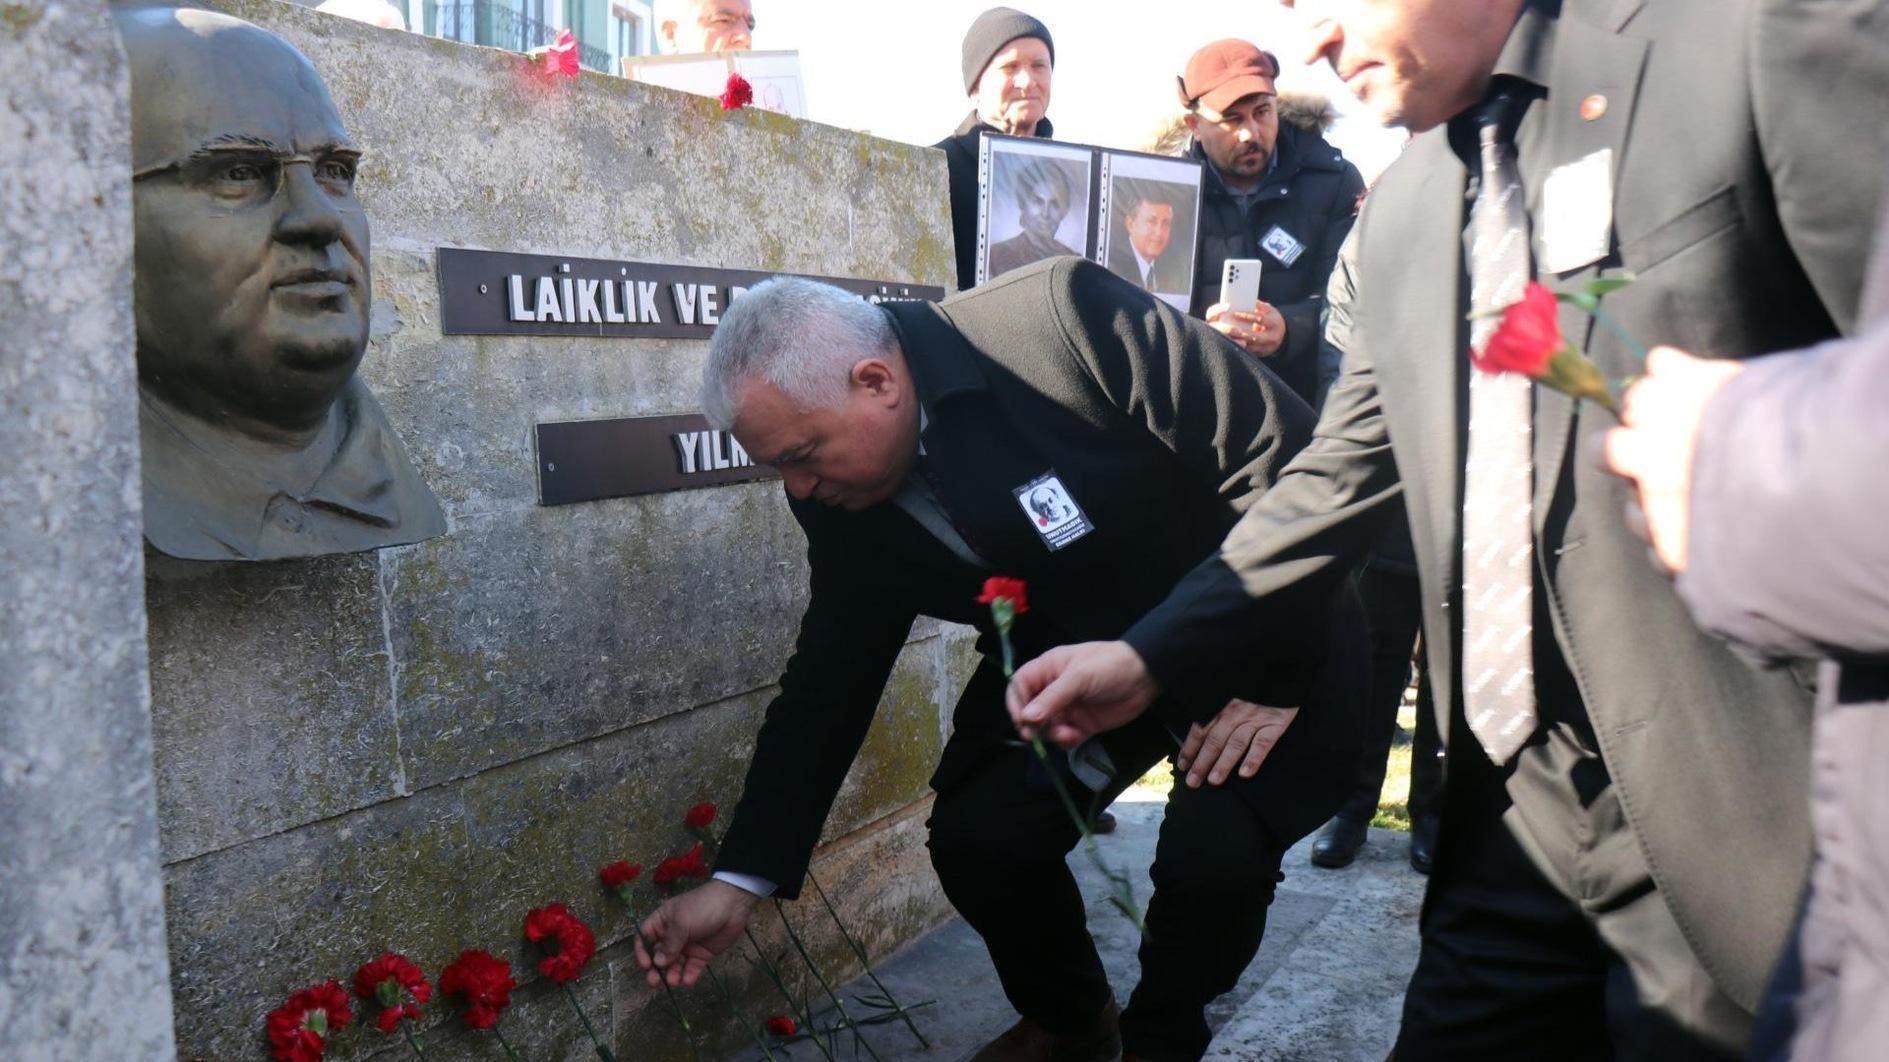 De vermoorde journalist Uğur Mumcu wordt herdacht op de 31e sterfdag